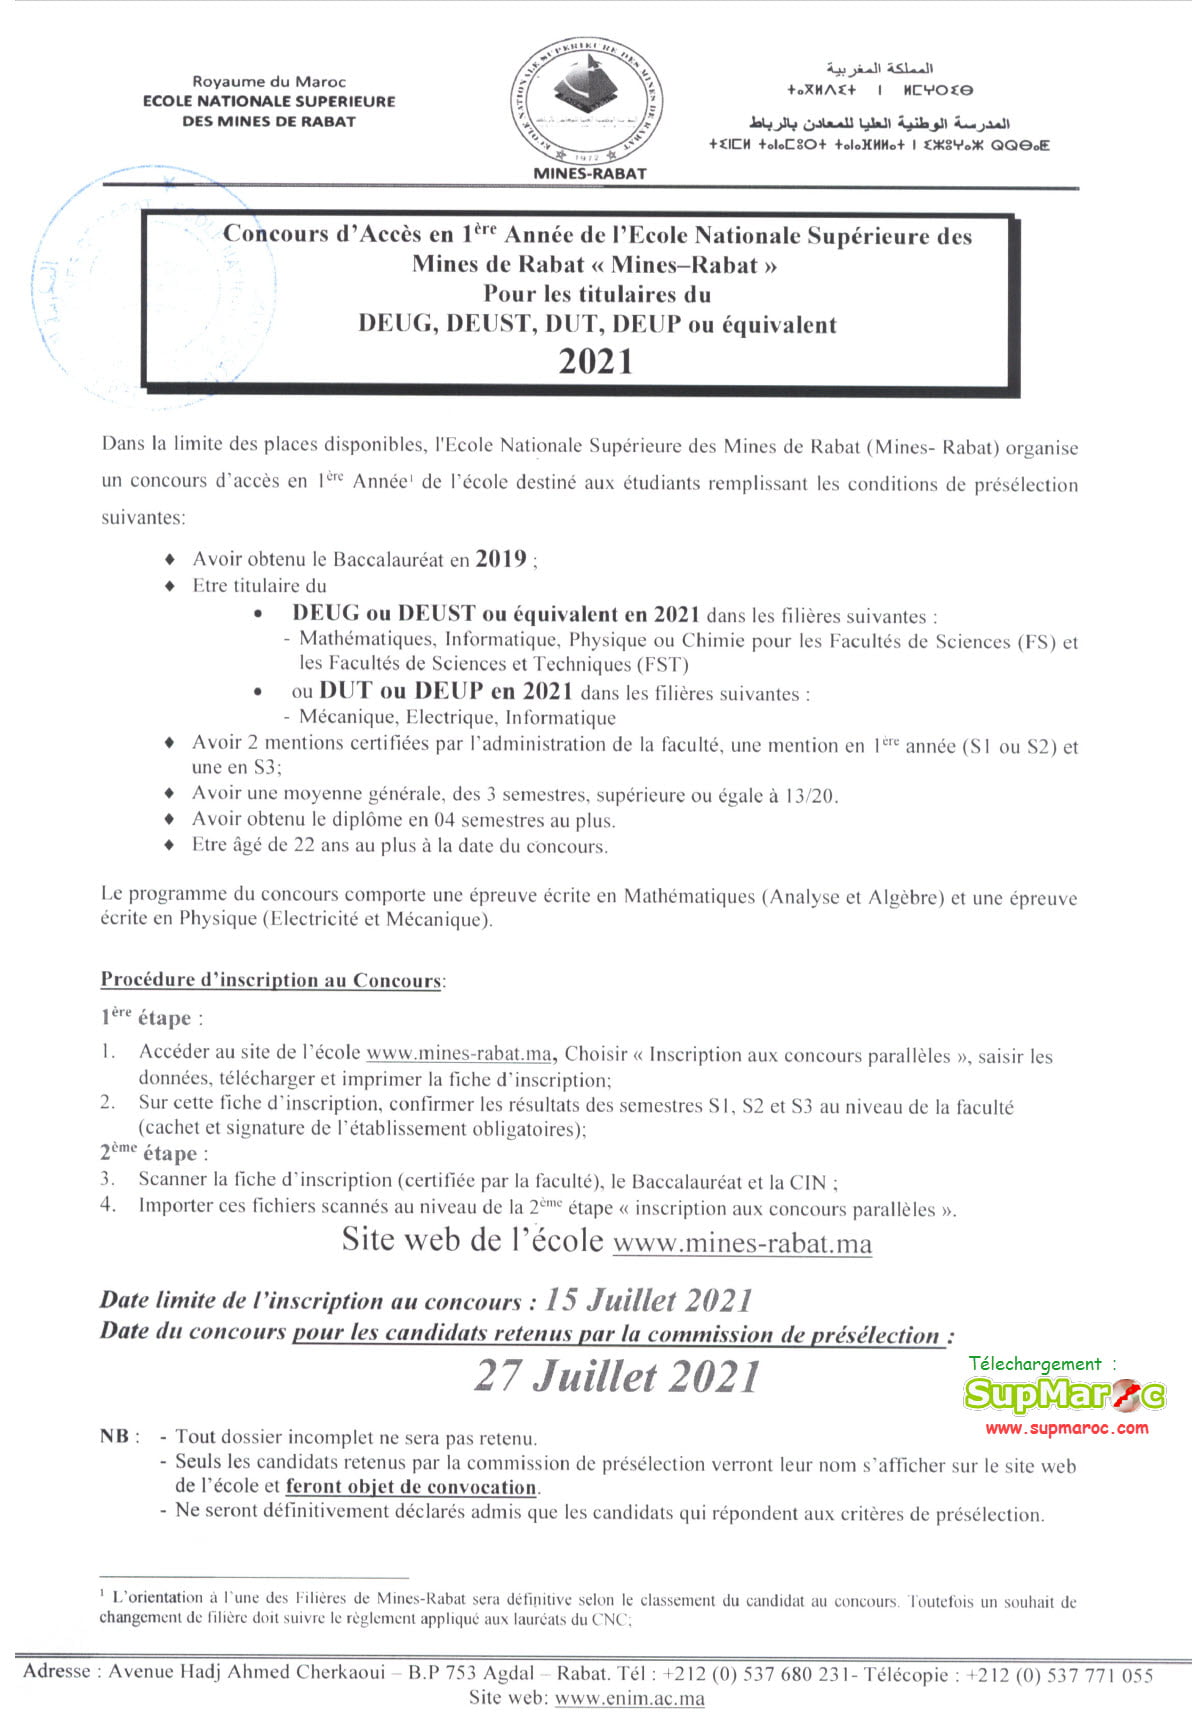 Concours ENSMR Accès 1ère  Mines Rabat  DEUG 2021-2022